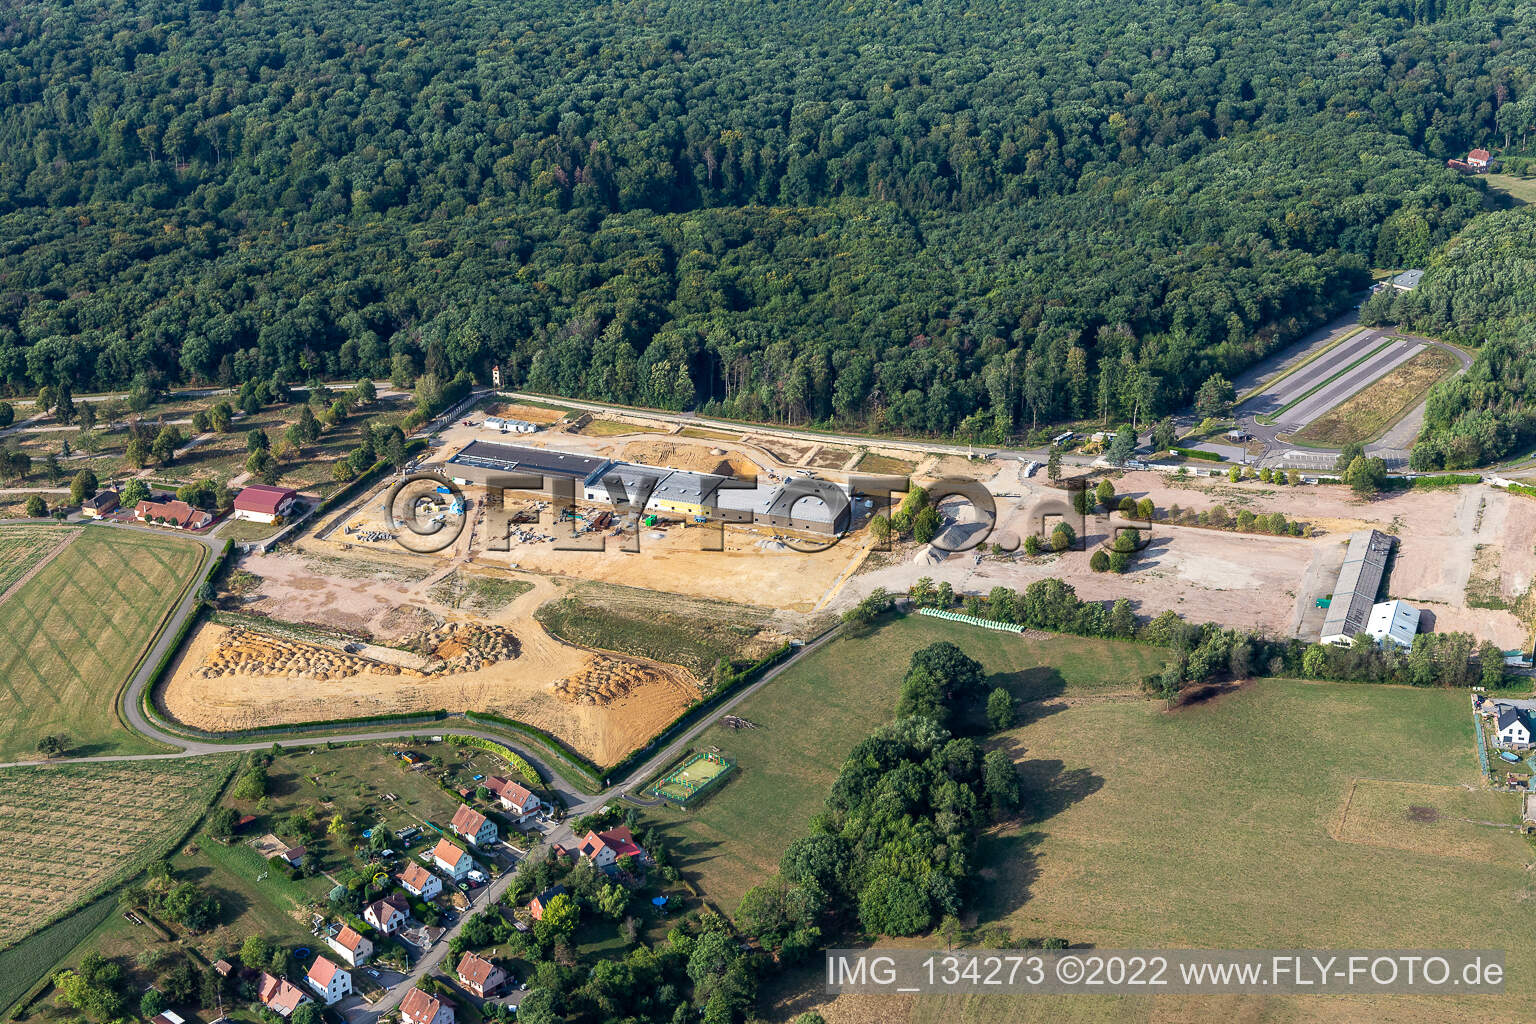 Vue aérienne de Surface commerciale sur le site de l'ancienne caserne à Drachenbronn-Birlenbach dans le département Bas Rhin, France